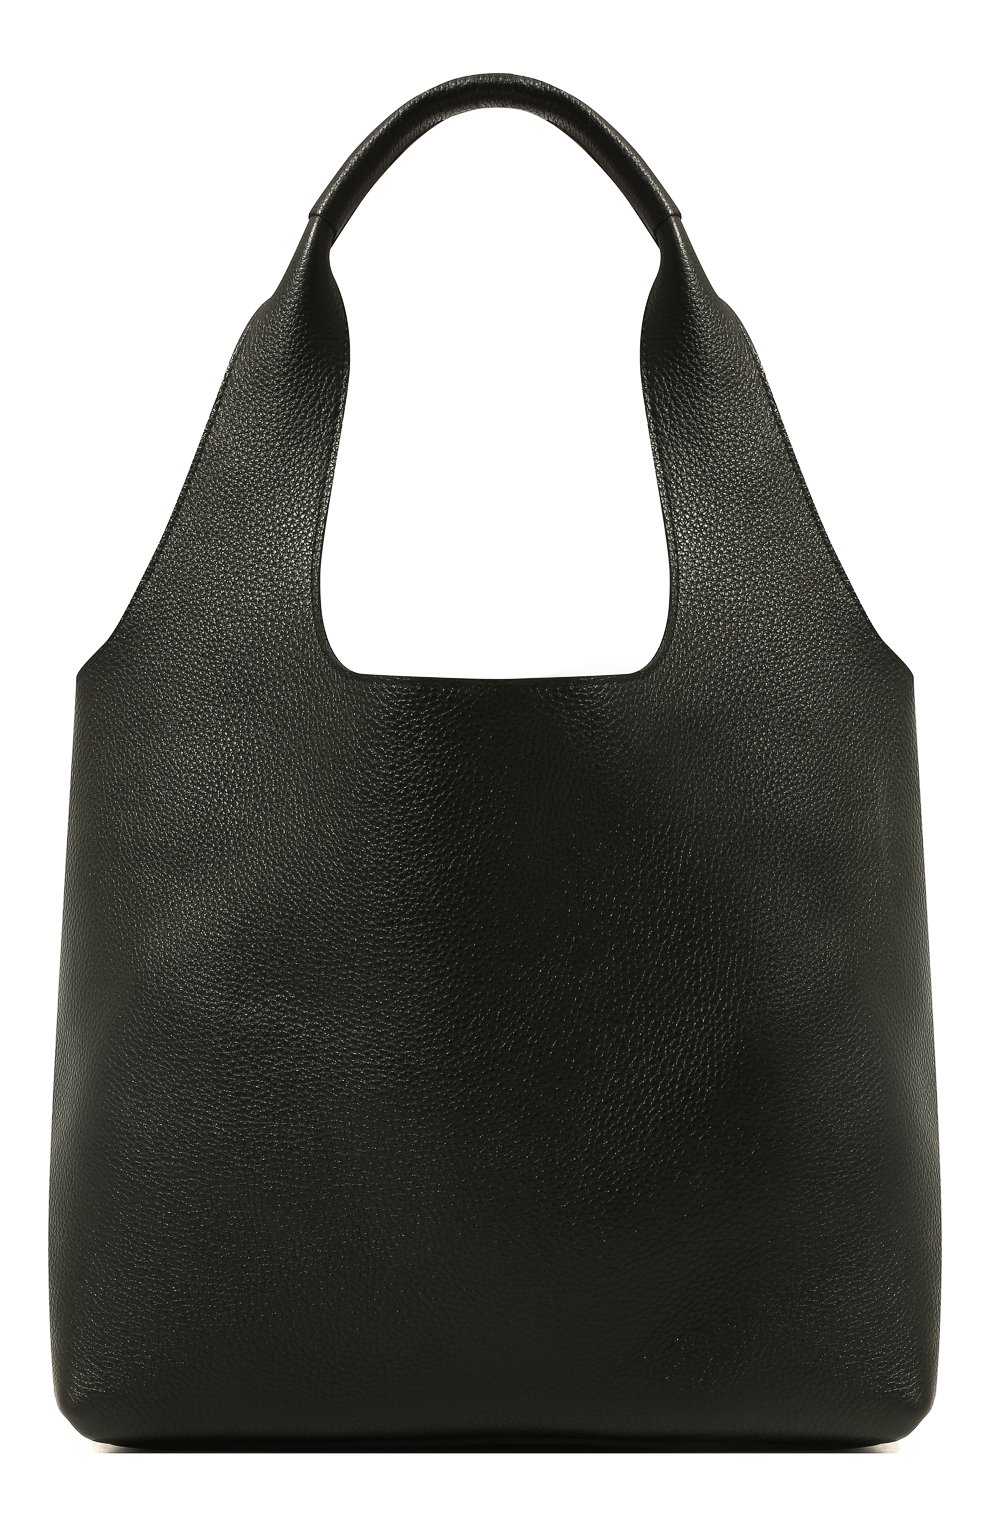 Женский сумка-тоут blair AGREEG черного цвета, арт. 15060478 | Фото 1 (Сумки-технические: Сумки-шопперы; Размер: medium; Материал: Натуральная кожа)